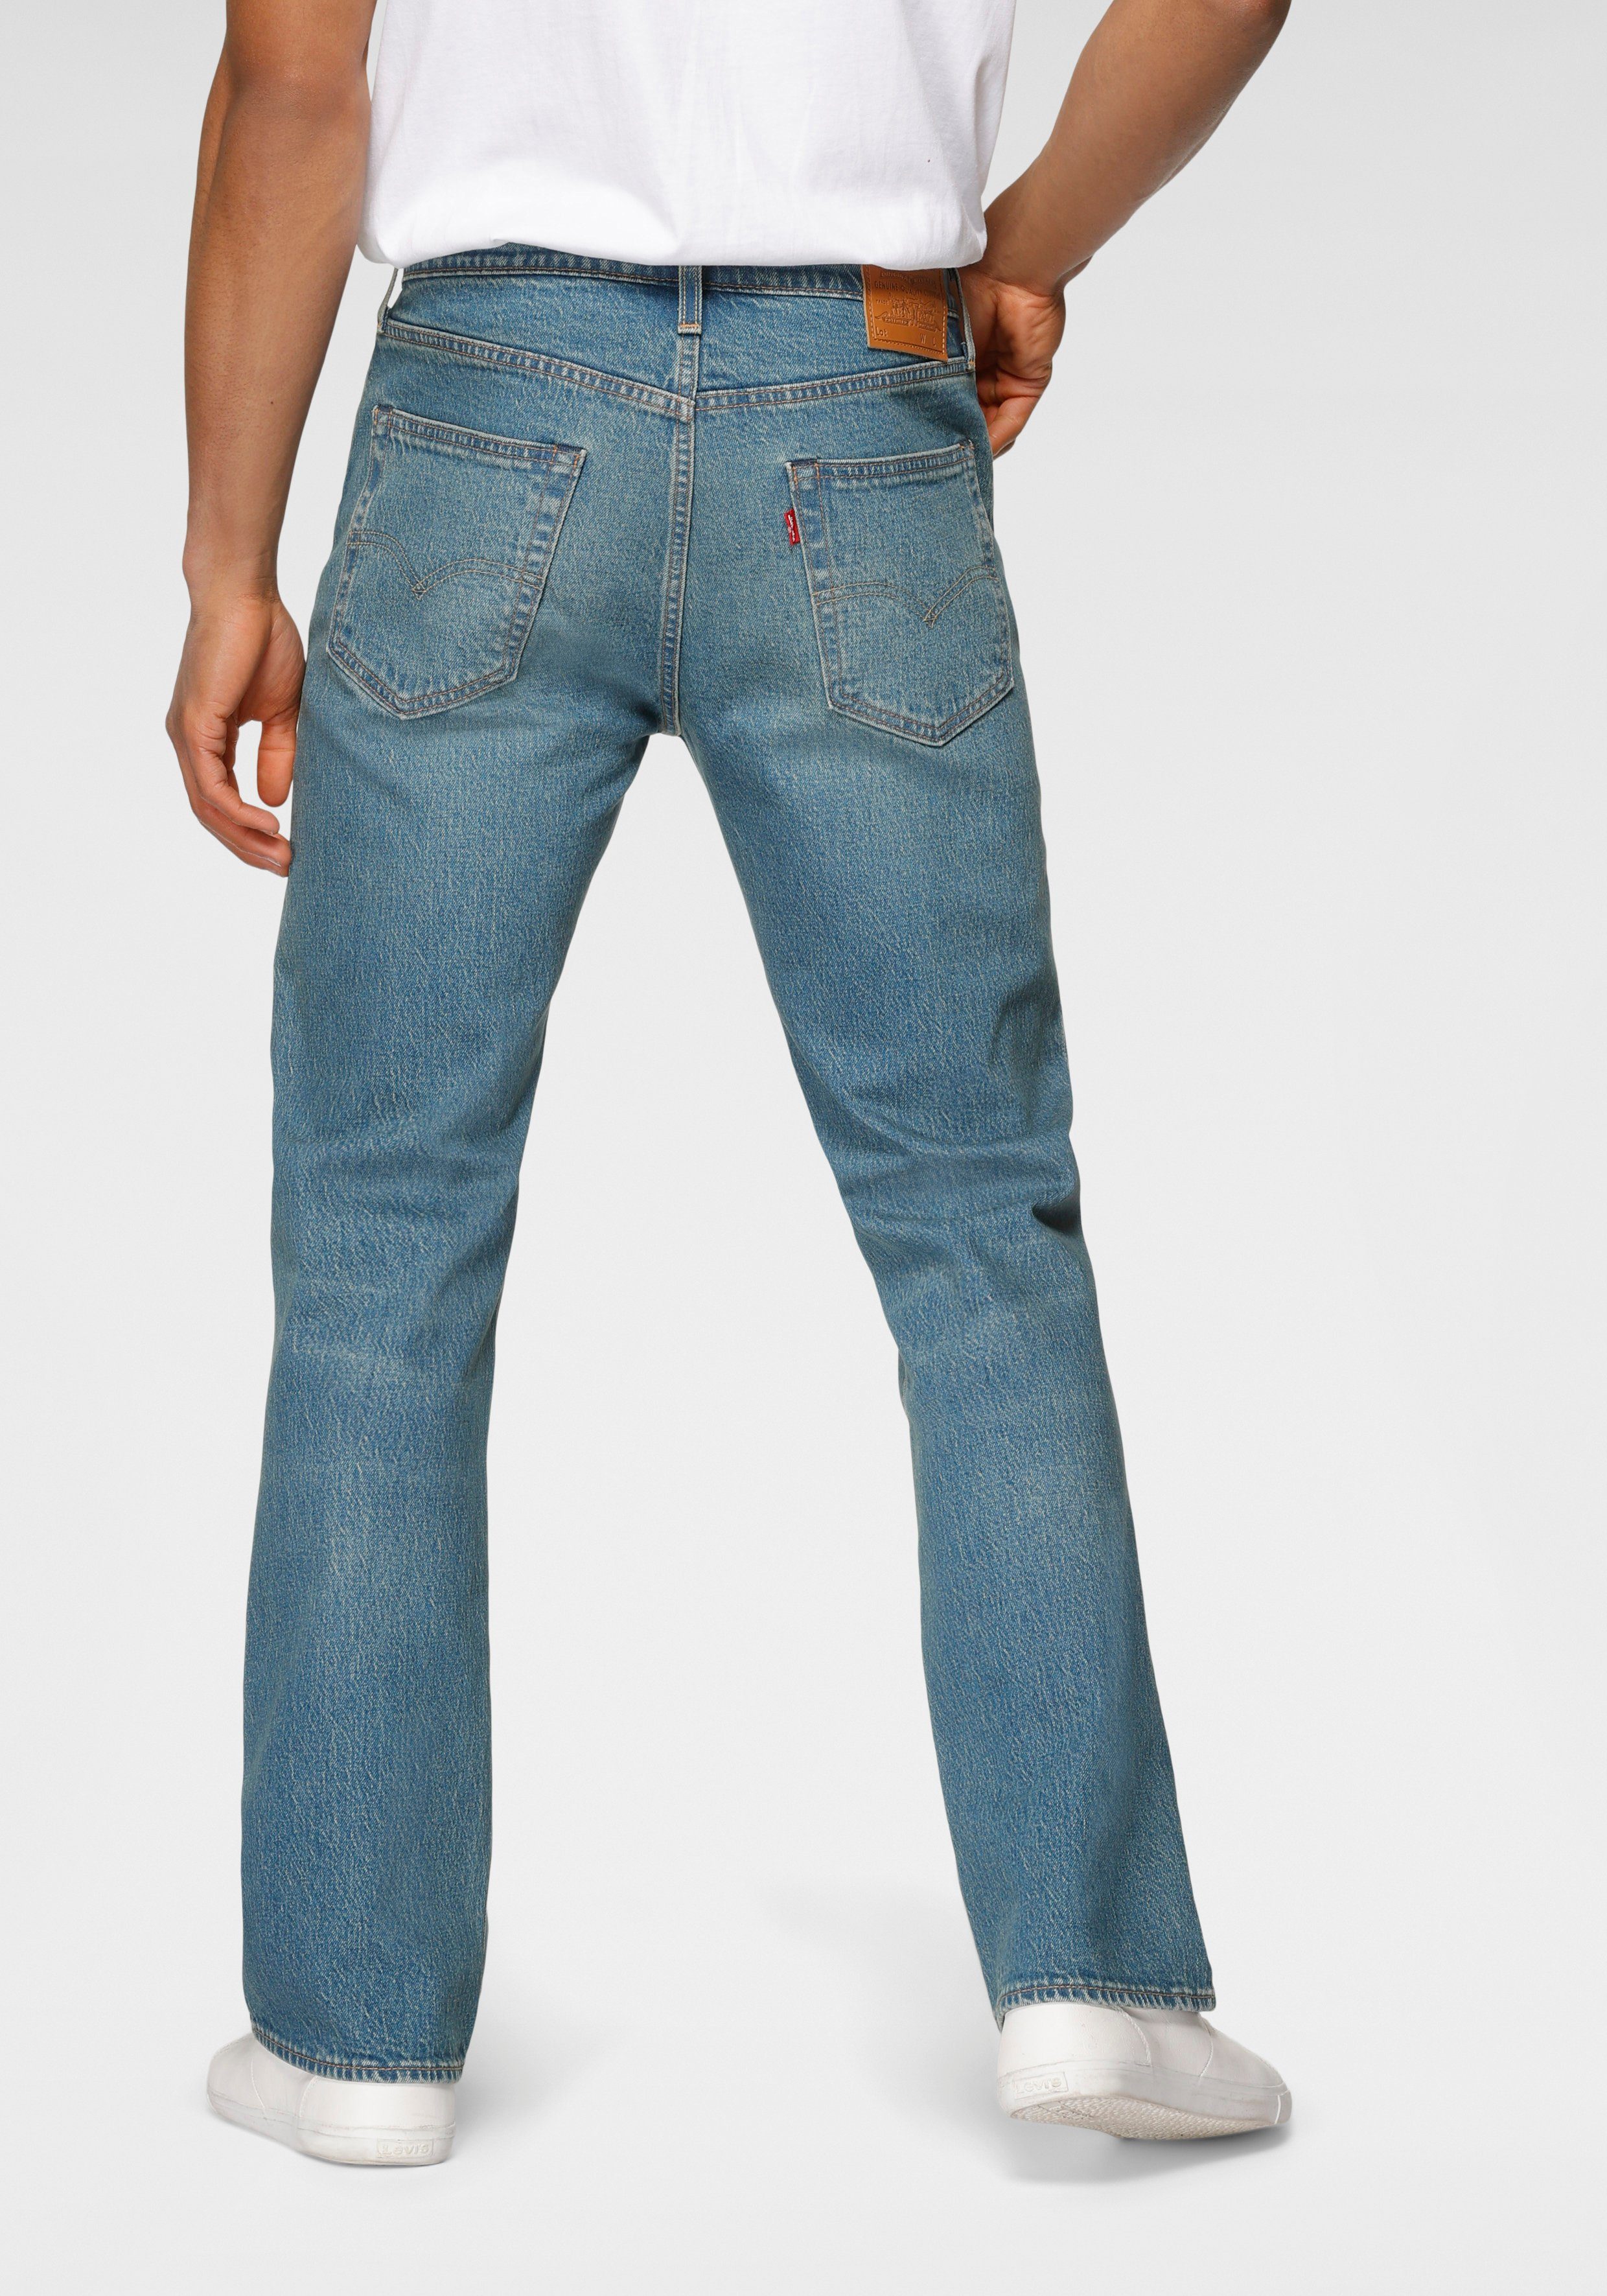 elkaar met de klok mee Achtervolging Levi's® Bootcut jeans 527 SLIM BOOT CUT in cleane wassing online bij | OTTO